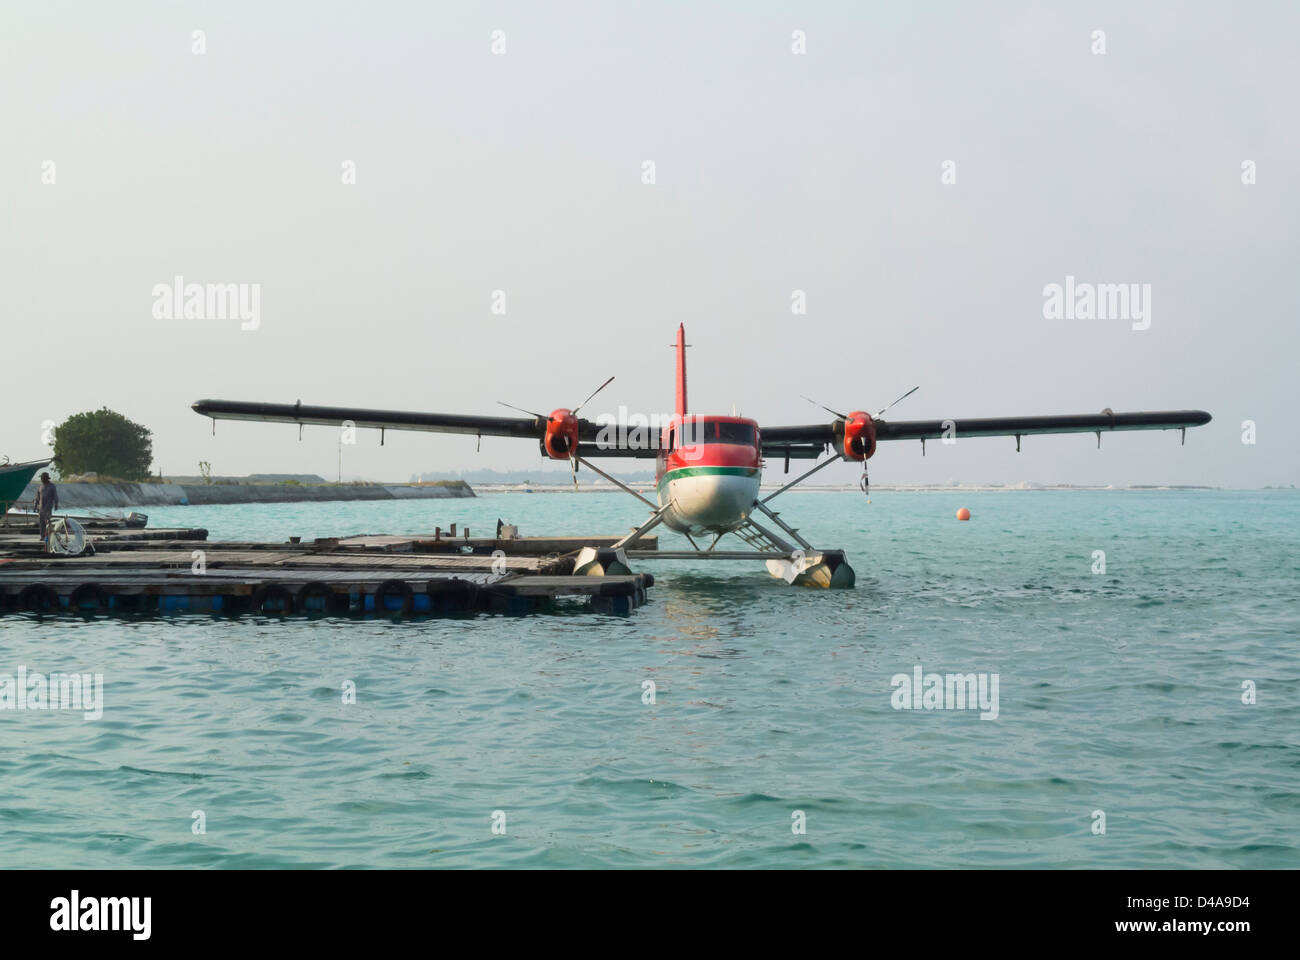 Wasserflugzeug am Flughafen, männlich, malediven Insel Stockfoto